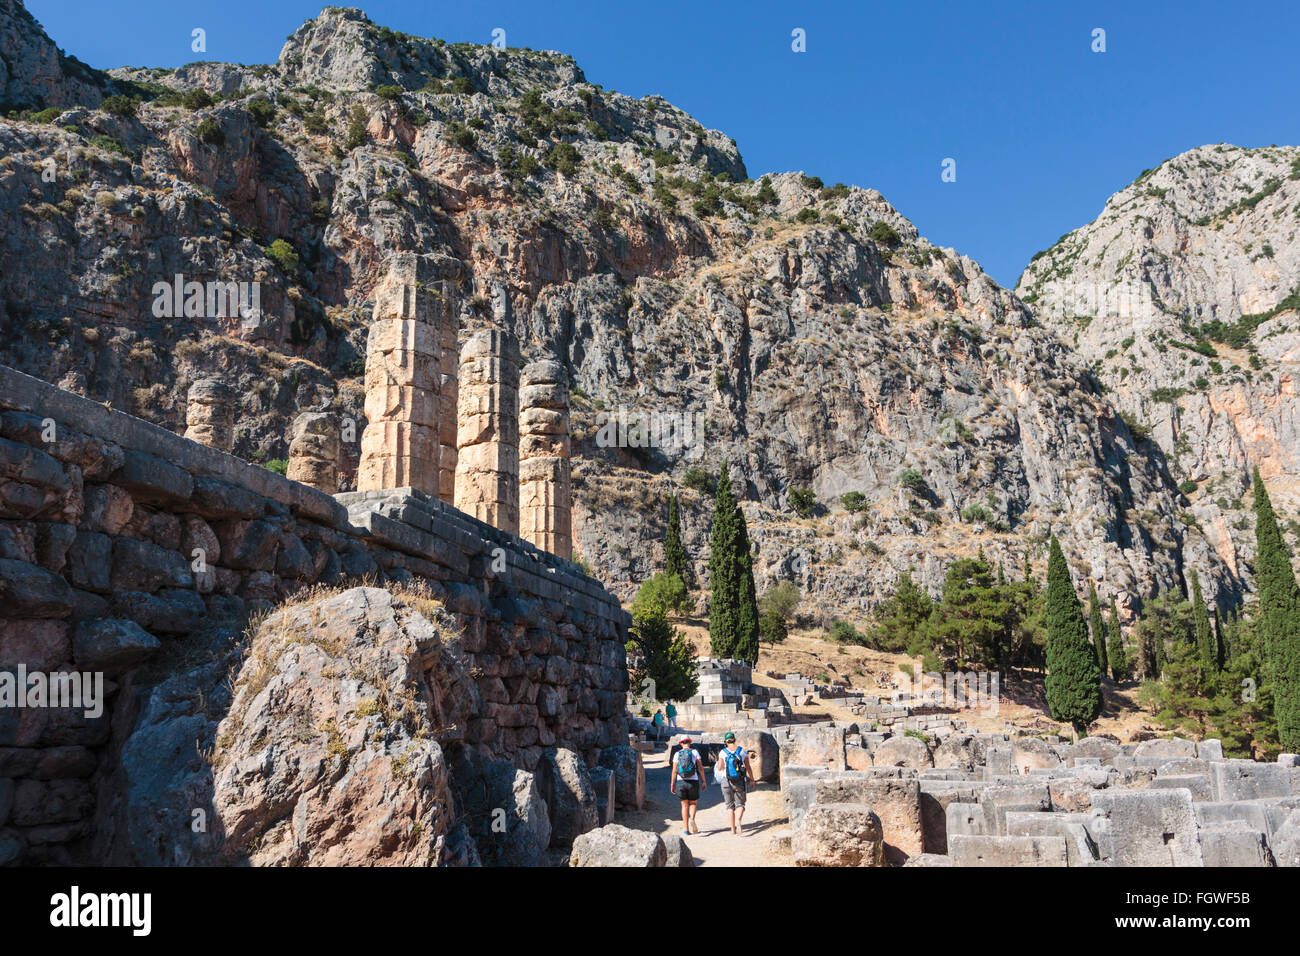 Antica Delphi, Phocis, Grecia. Resti del Tempio di Apollo. Oggi le rovine visibili risalgono al IV secolo A.C. Foto Stock